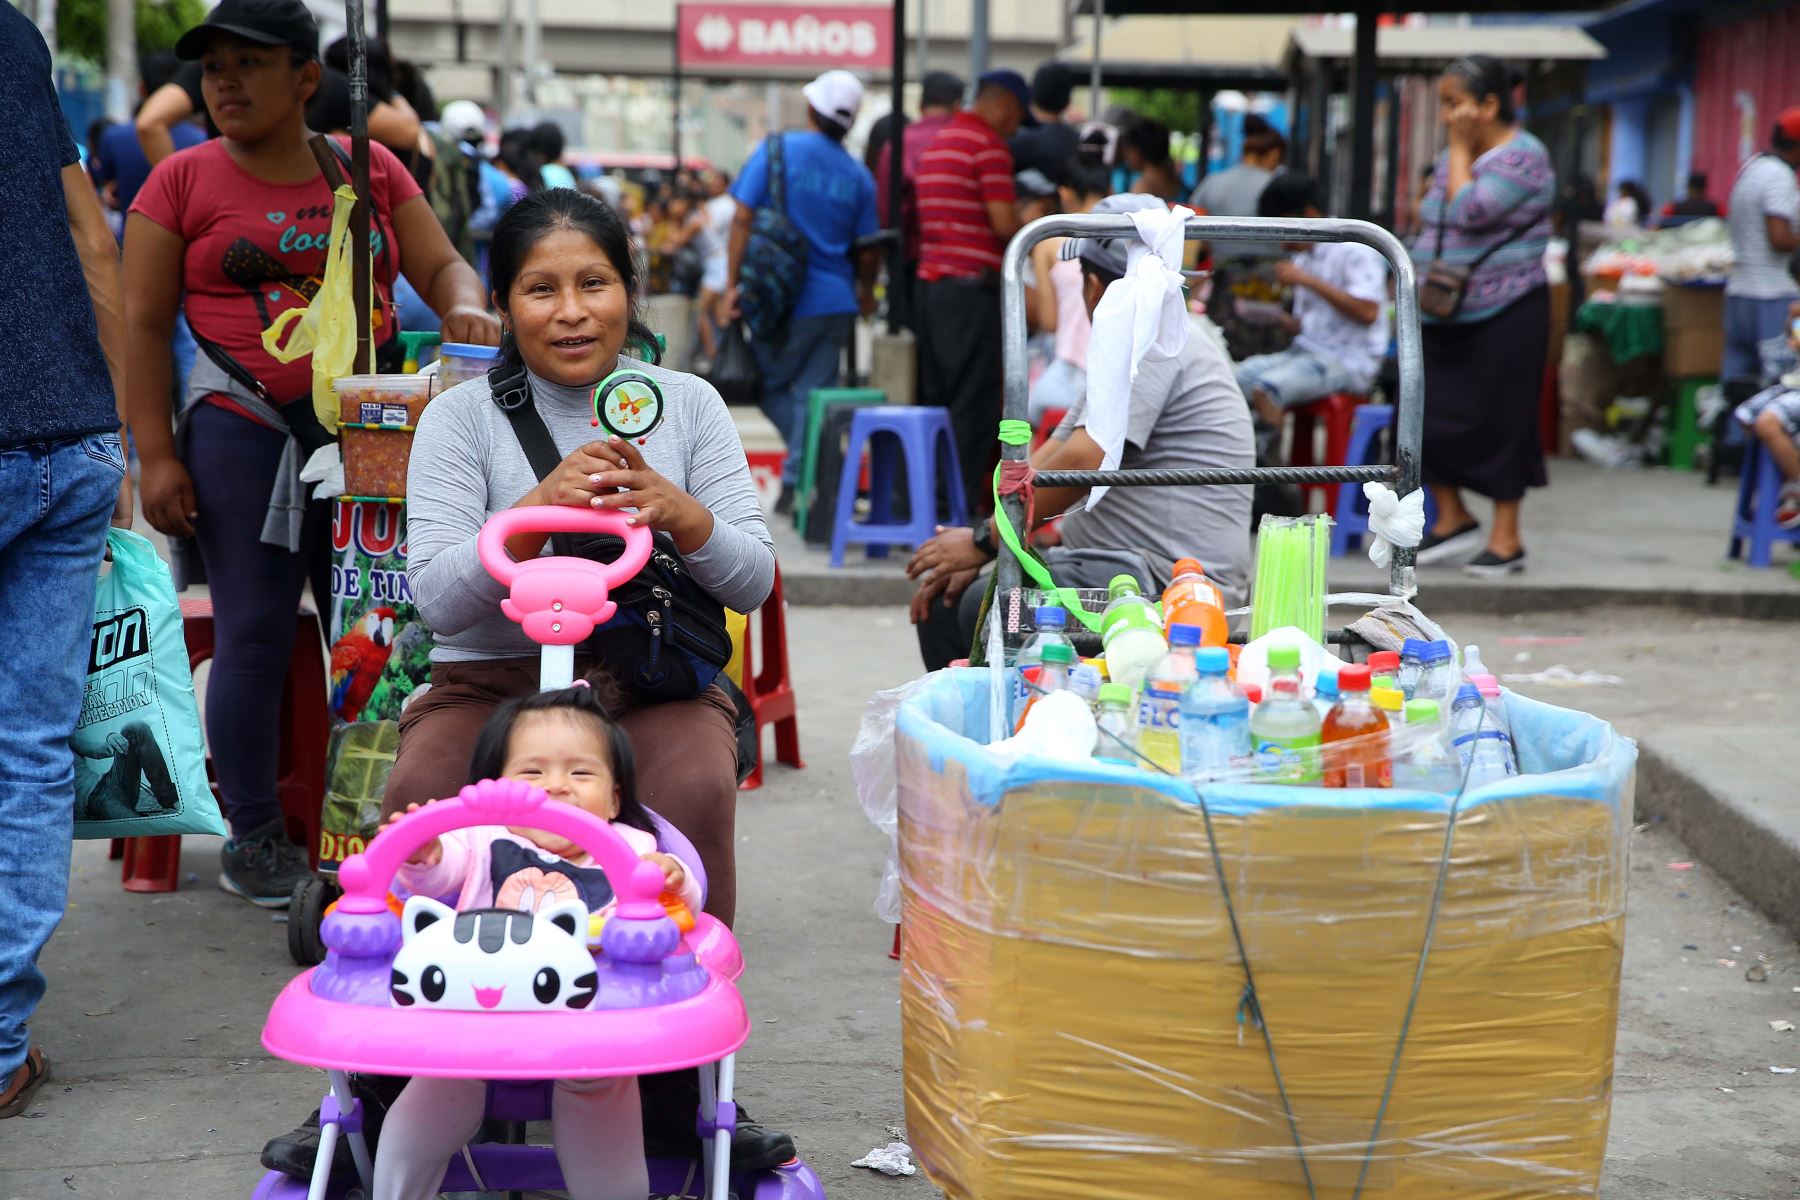 Los ambulantes abundan en Lima ofreciendo todo tipo de productos y alimentos a los limeños que se aventuran a lidiar con la congestión en el centro de la ciudad. Foto: ANDINA/Luis Iparraguirre